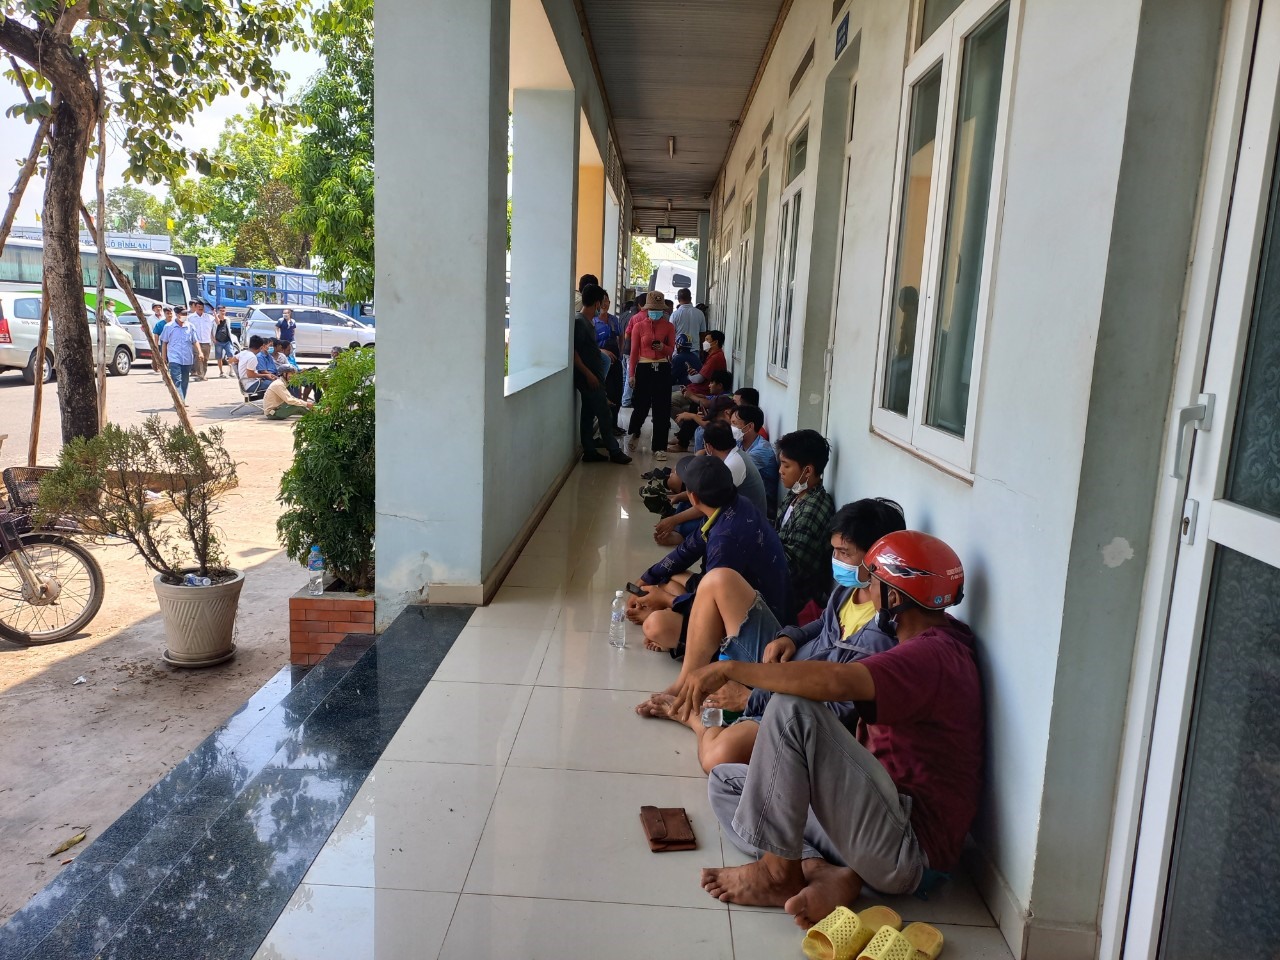 Xếp hàng chờ đăng kiểm tại một trung tâm đăng kiểm ở TP Biên Hoà. Ảnh: Hà Anh Chiến